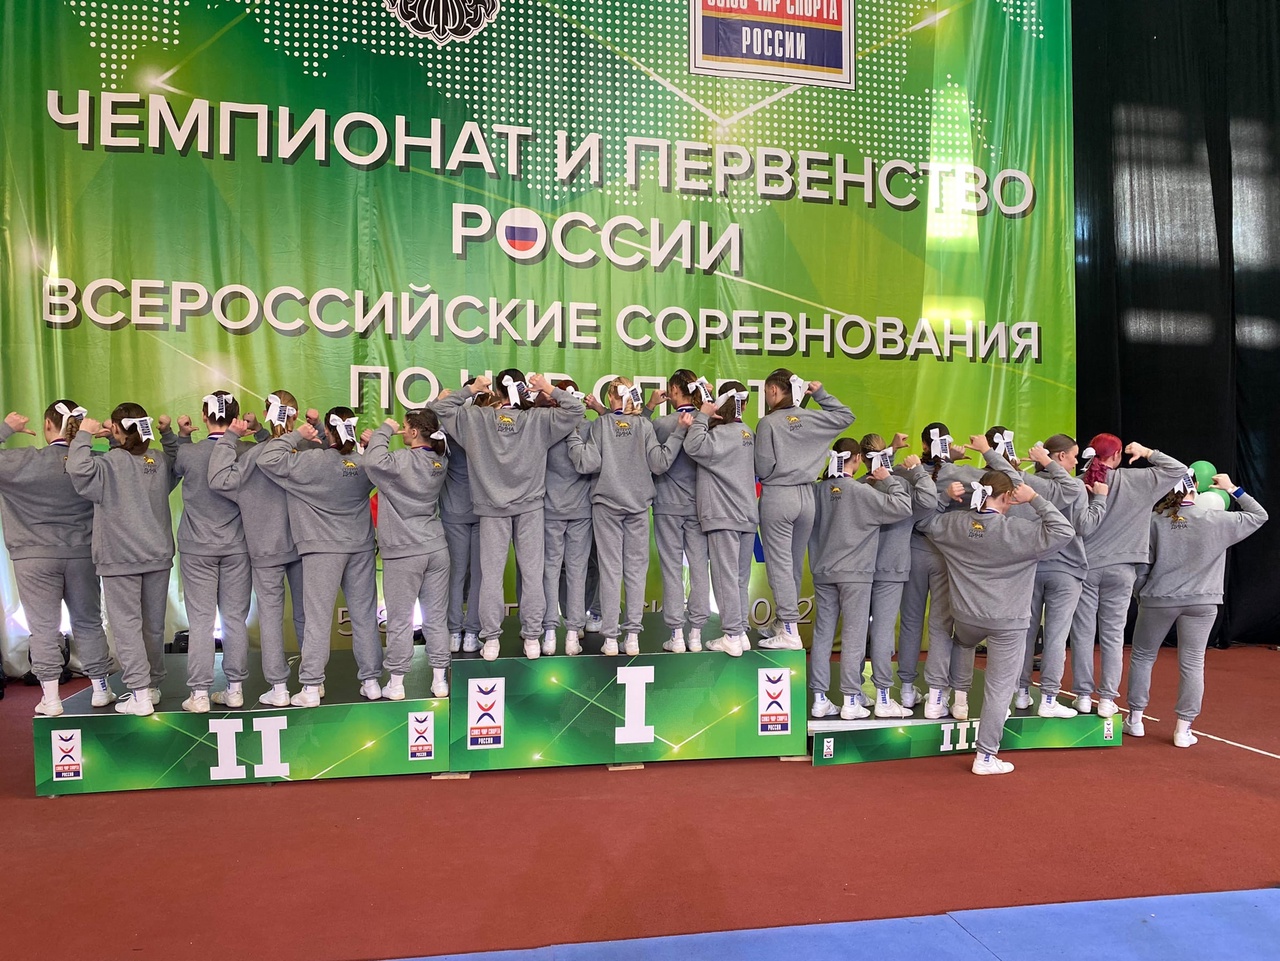 Получивший поддержку от «Дины» клуб спортивного чирлидинга «Victory»  стал чемпионом России